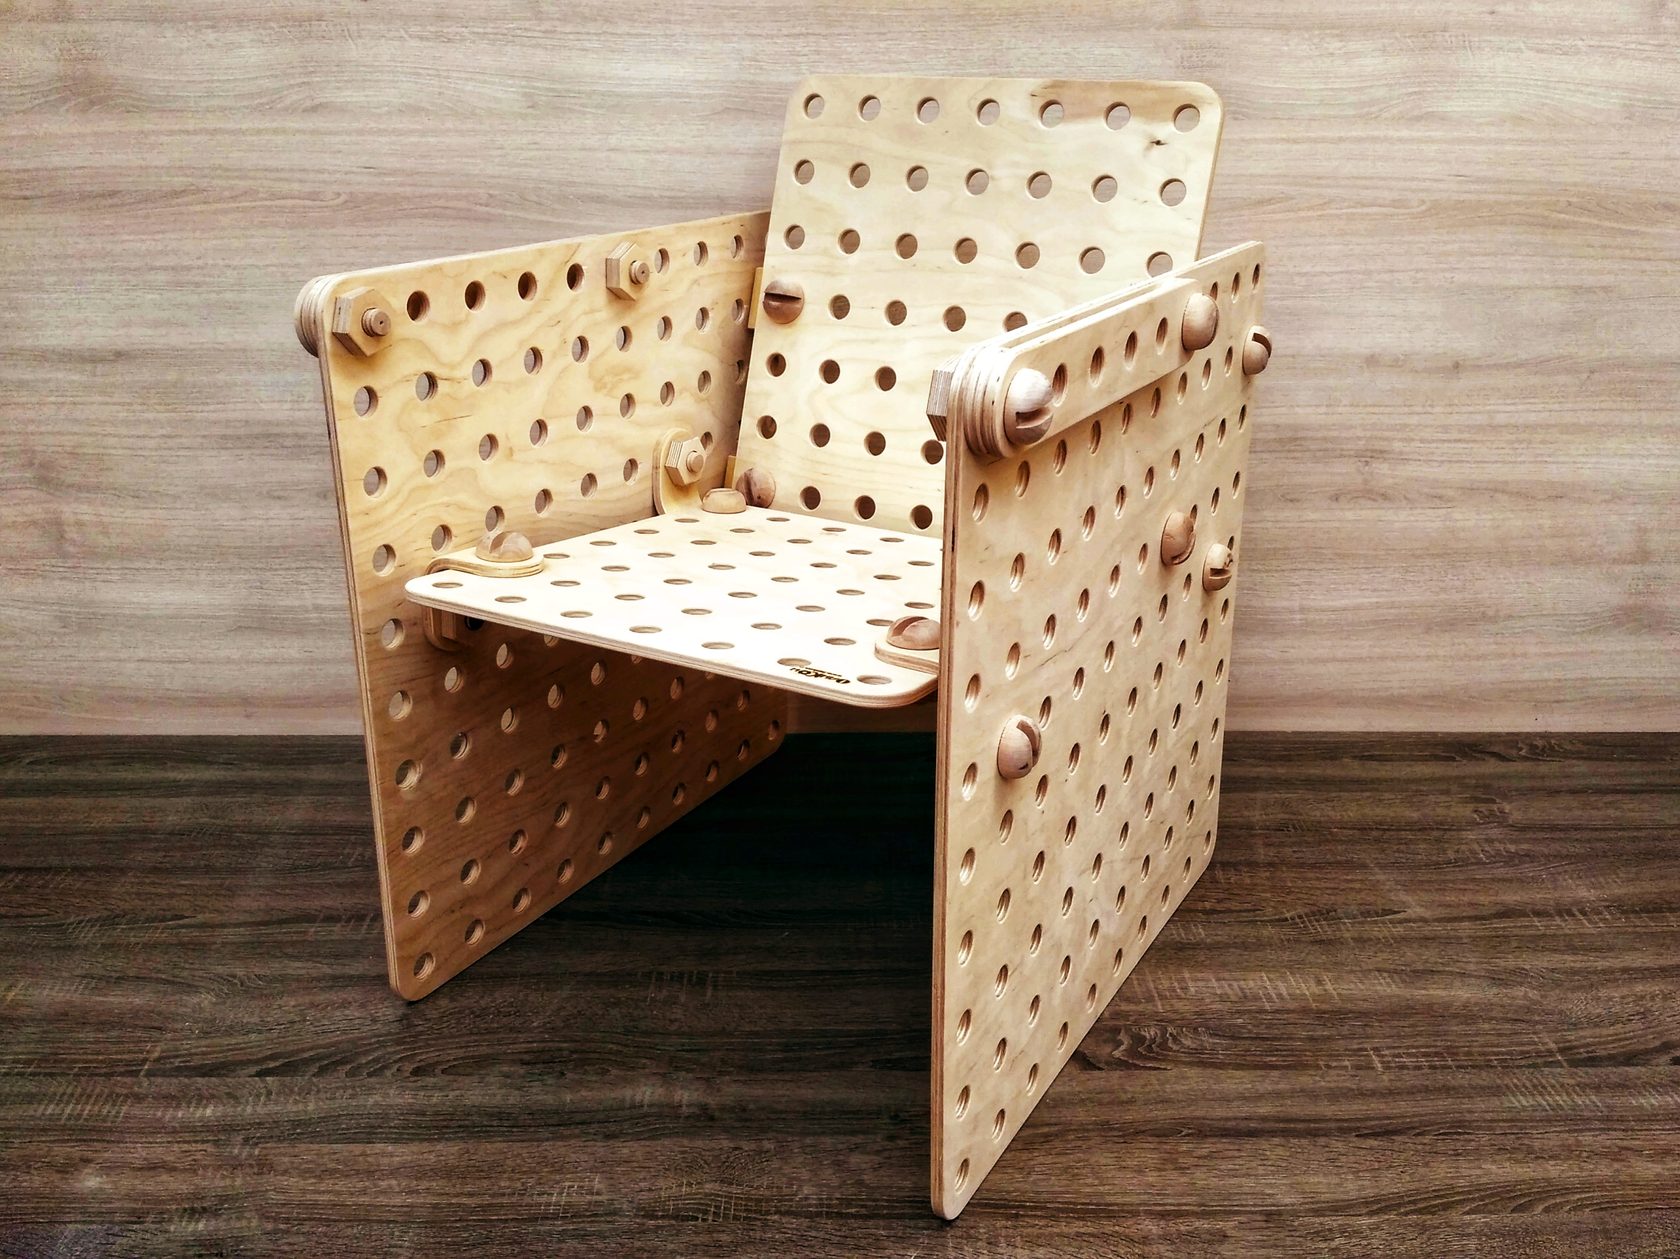 кресло, фанерный конструктор, металлический конструктор, деревянный конструктор